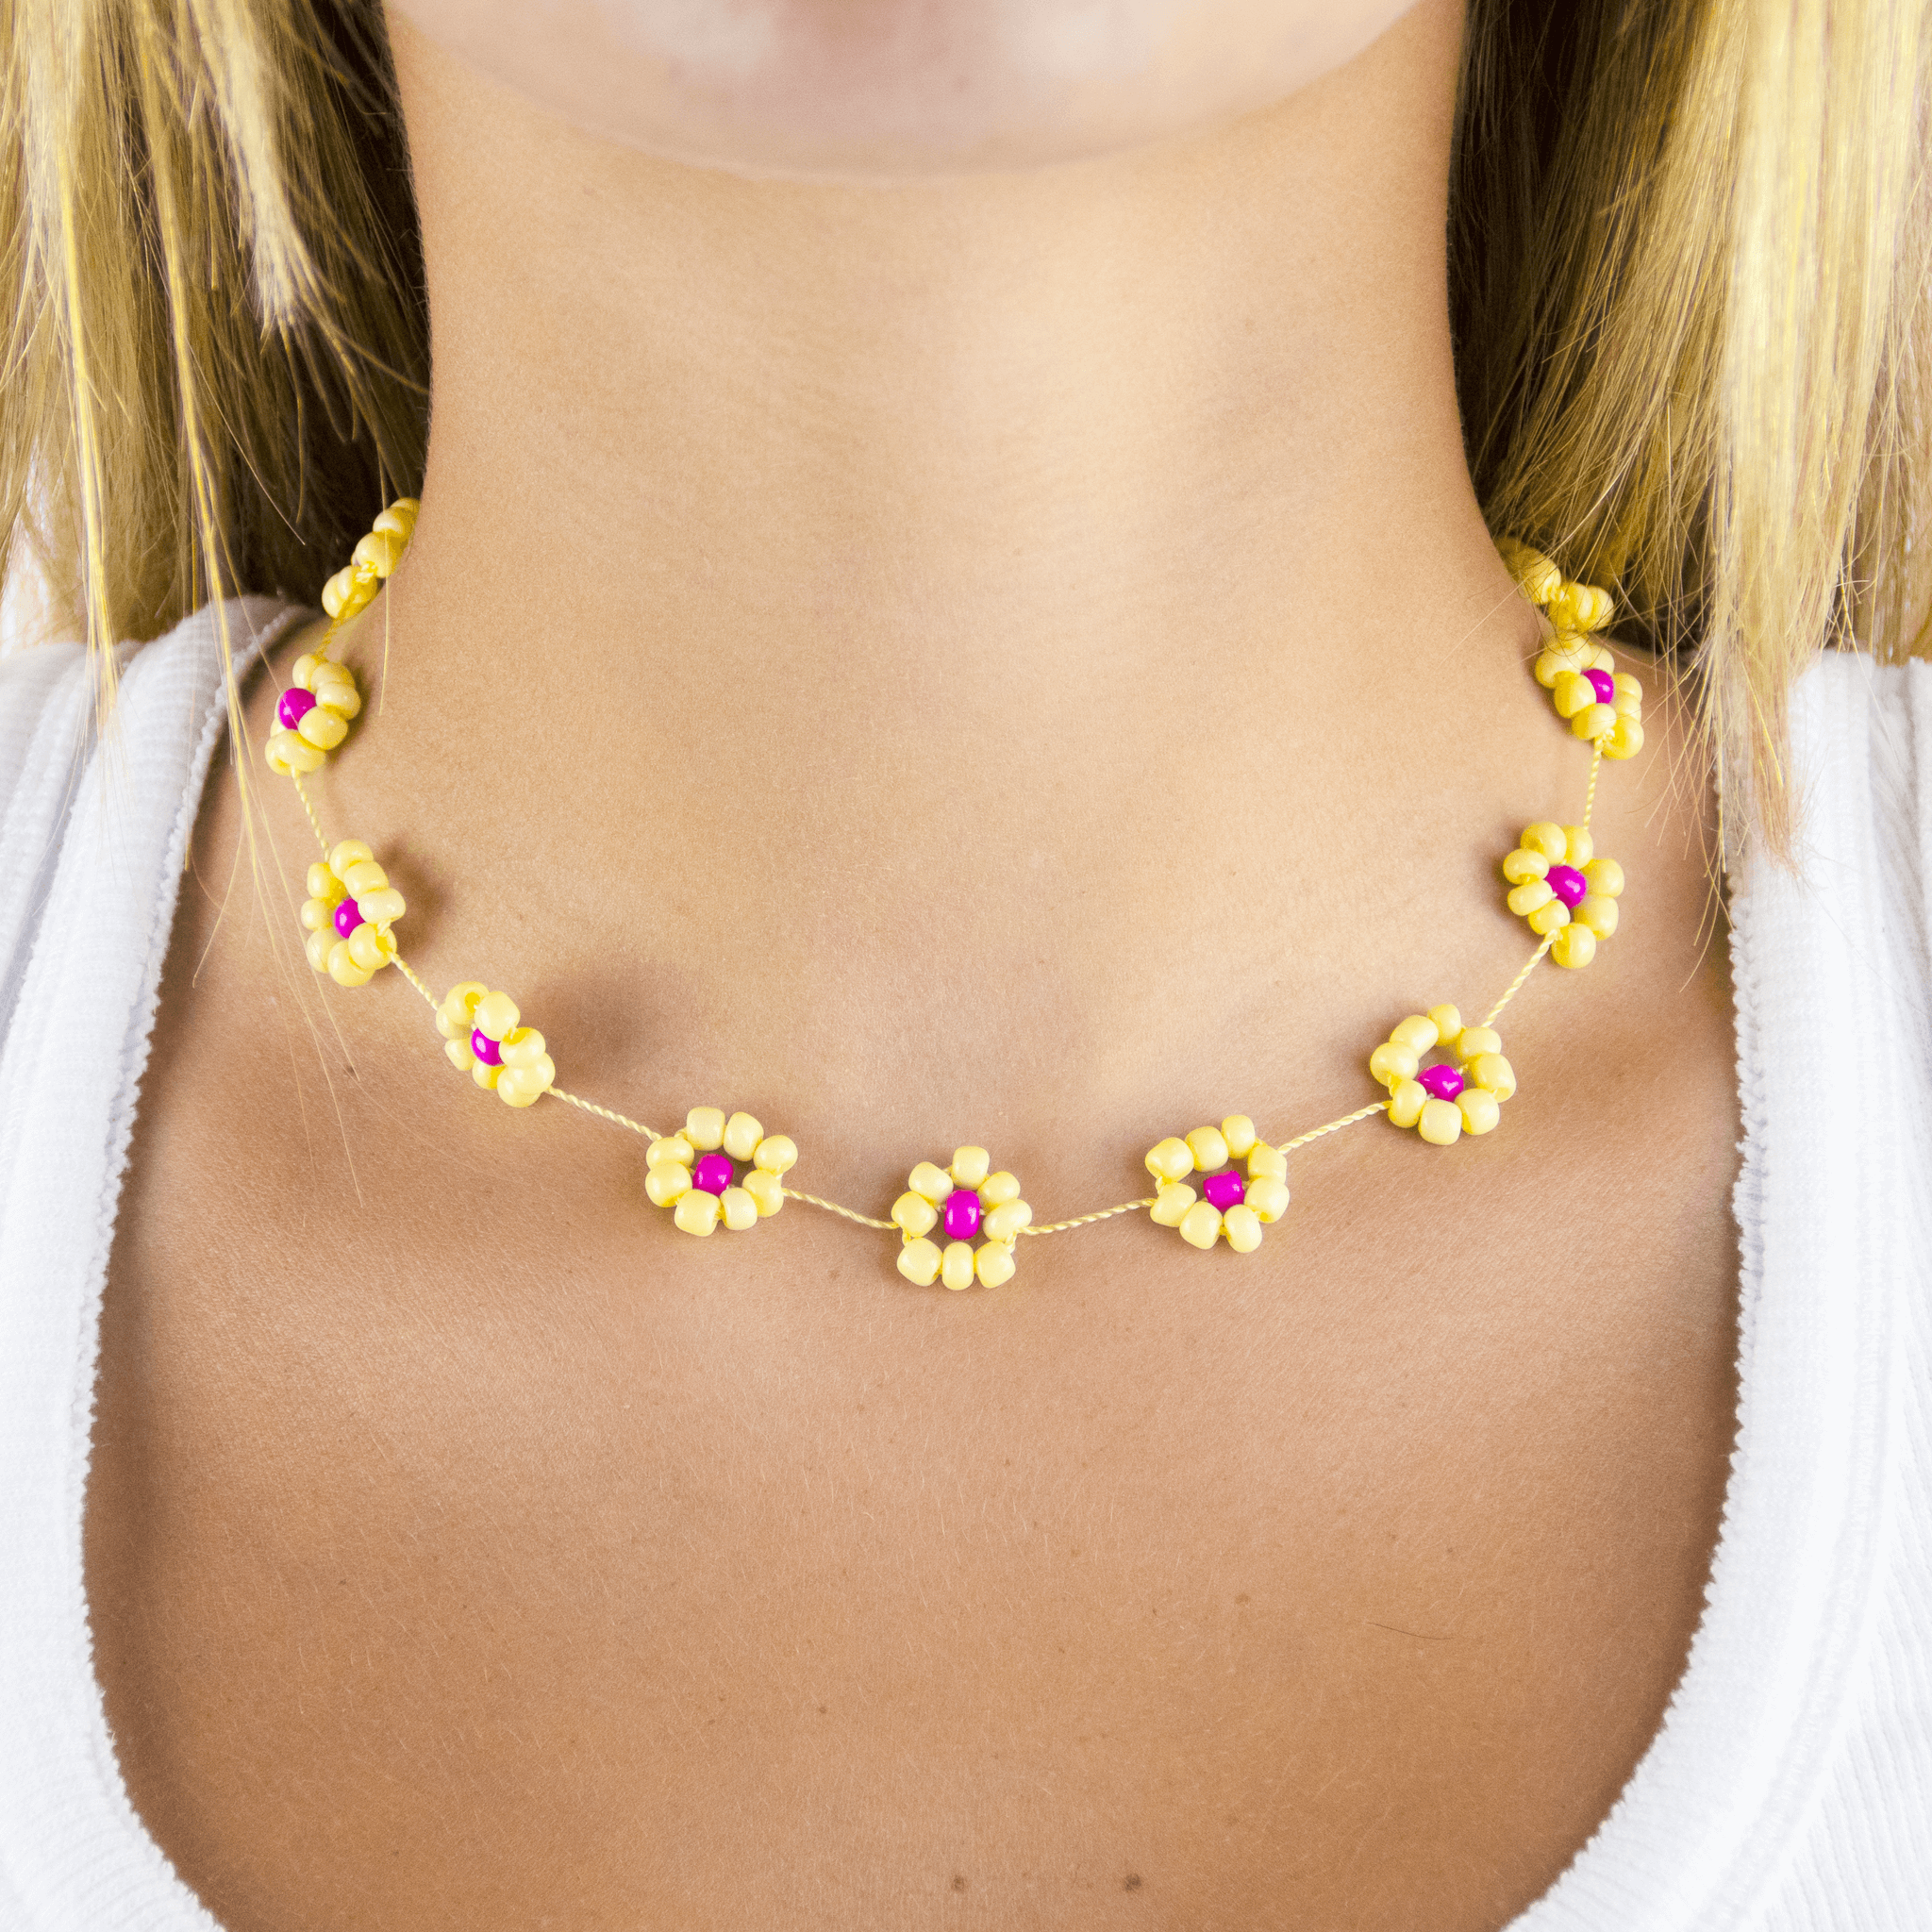 Rainbow Choker Necklace Seed Bead Daisy Choker Hippie Boho - Etsy | Beaded  jewelry, Girly jewelry, Beaded necklace diy